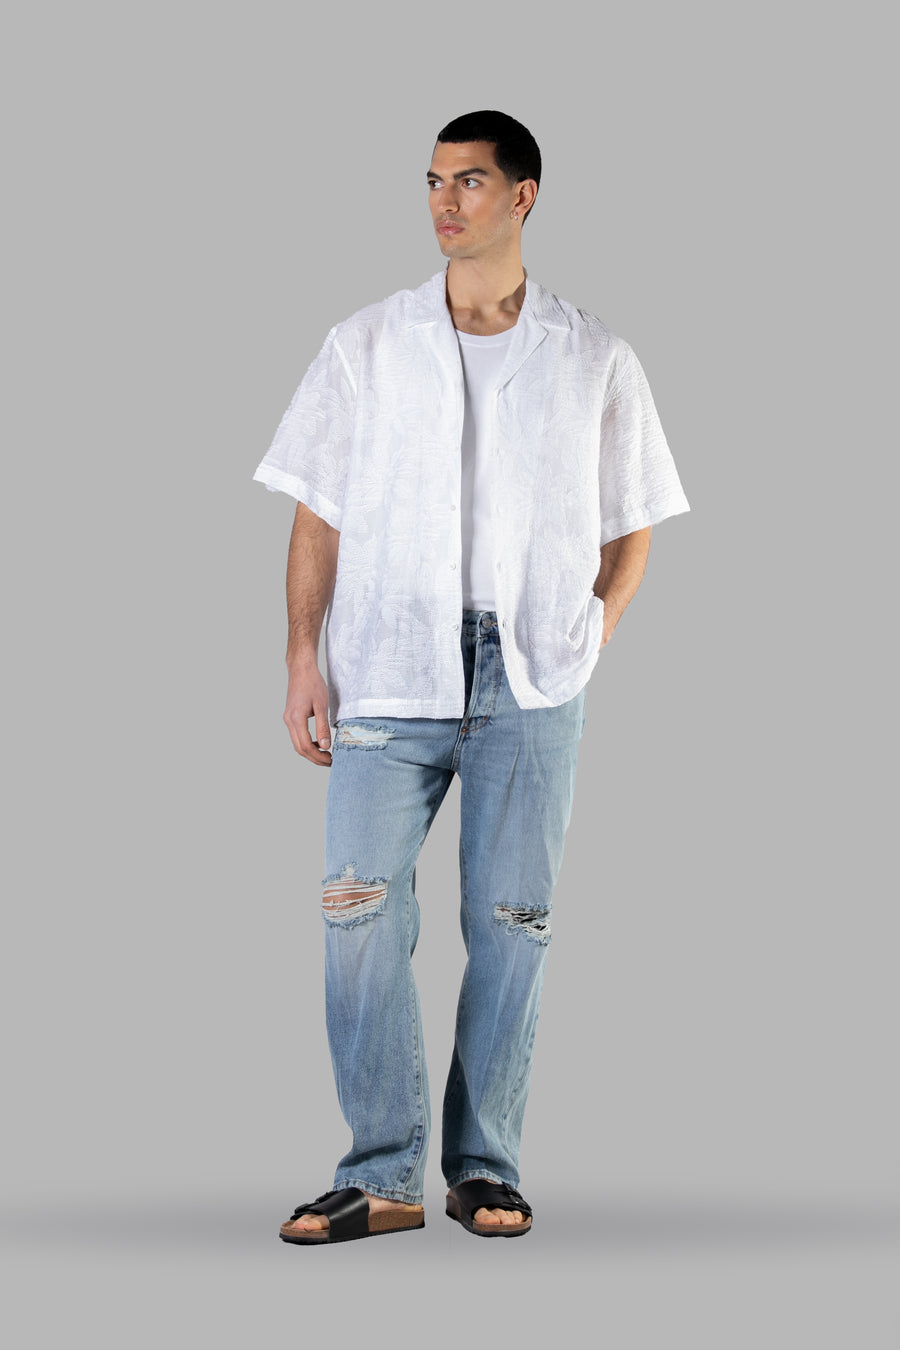 Camicia in viscosa traforata in tono floreale - Bianco